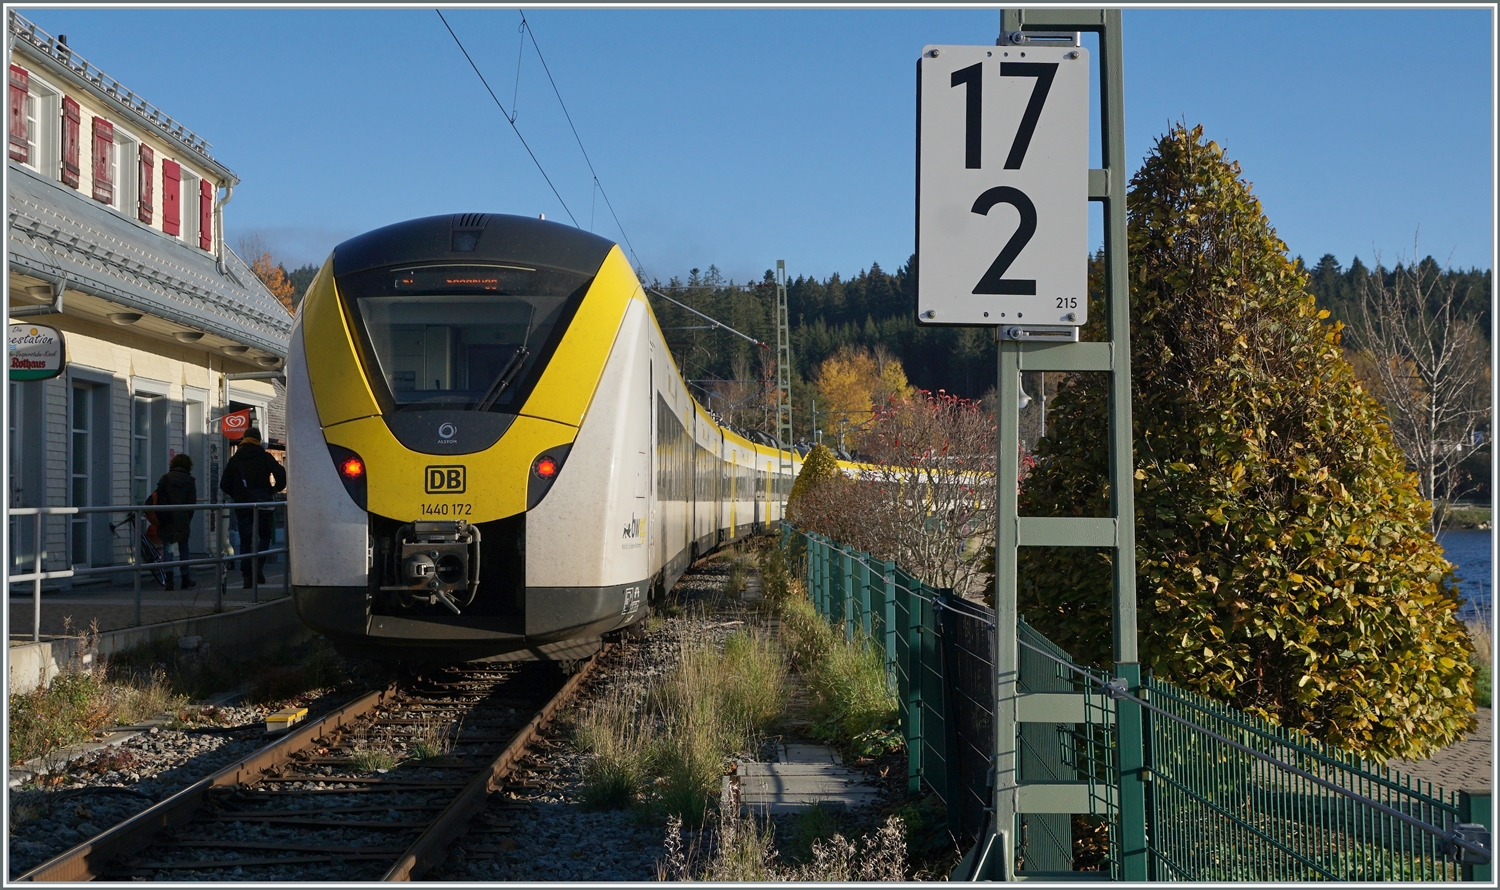 Der DB 1440 172 und 683 beim Halt in Schluchsee, der Zug wird in Krze nach Seebruck weiterfahren. Das Bild entstand auf dem nach der Durchfahrt geffneten Schrankenbergangs in Schluchsee. 

13. November 2022